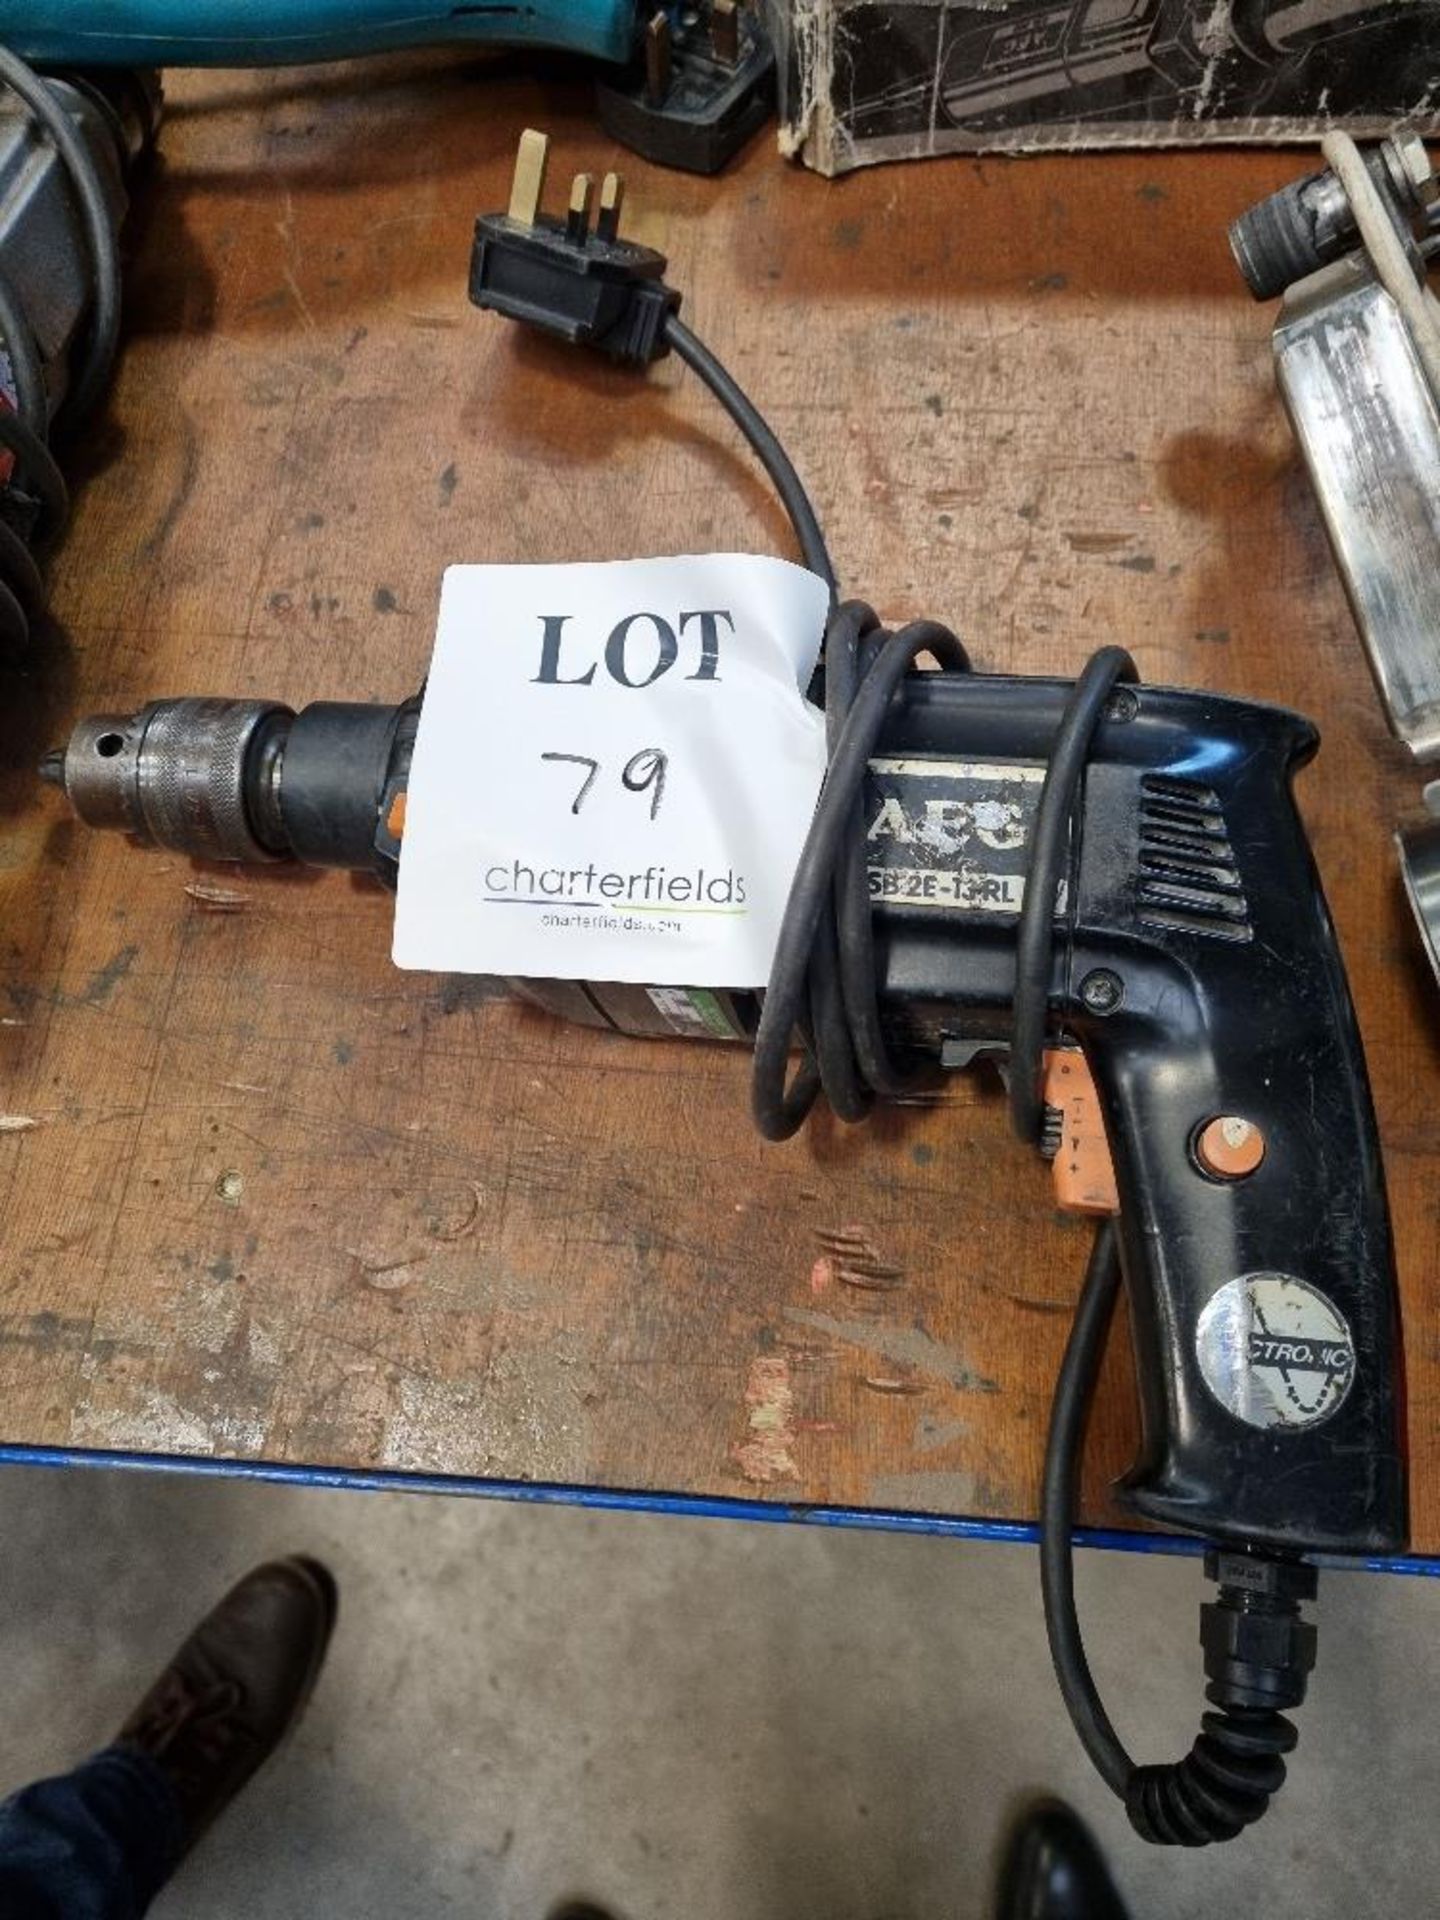 AEG SB2E-T3 RL power drill